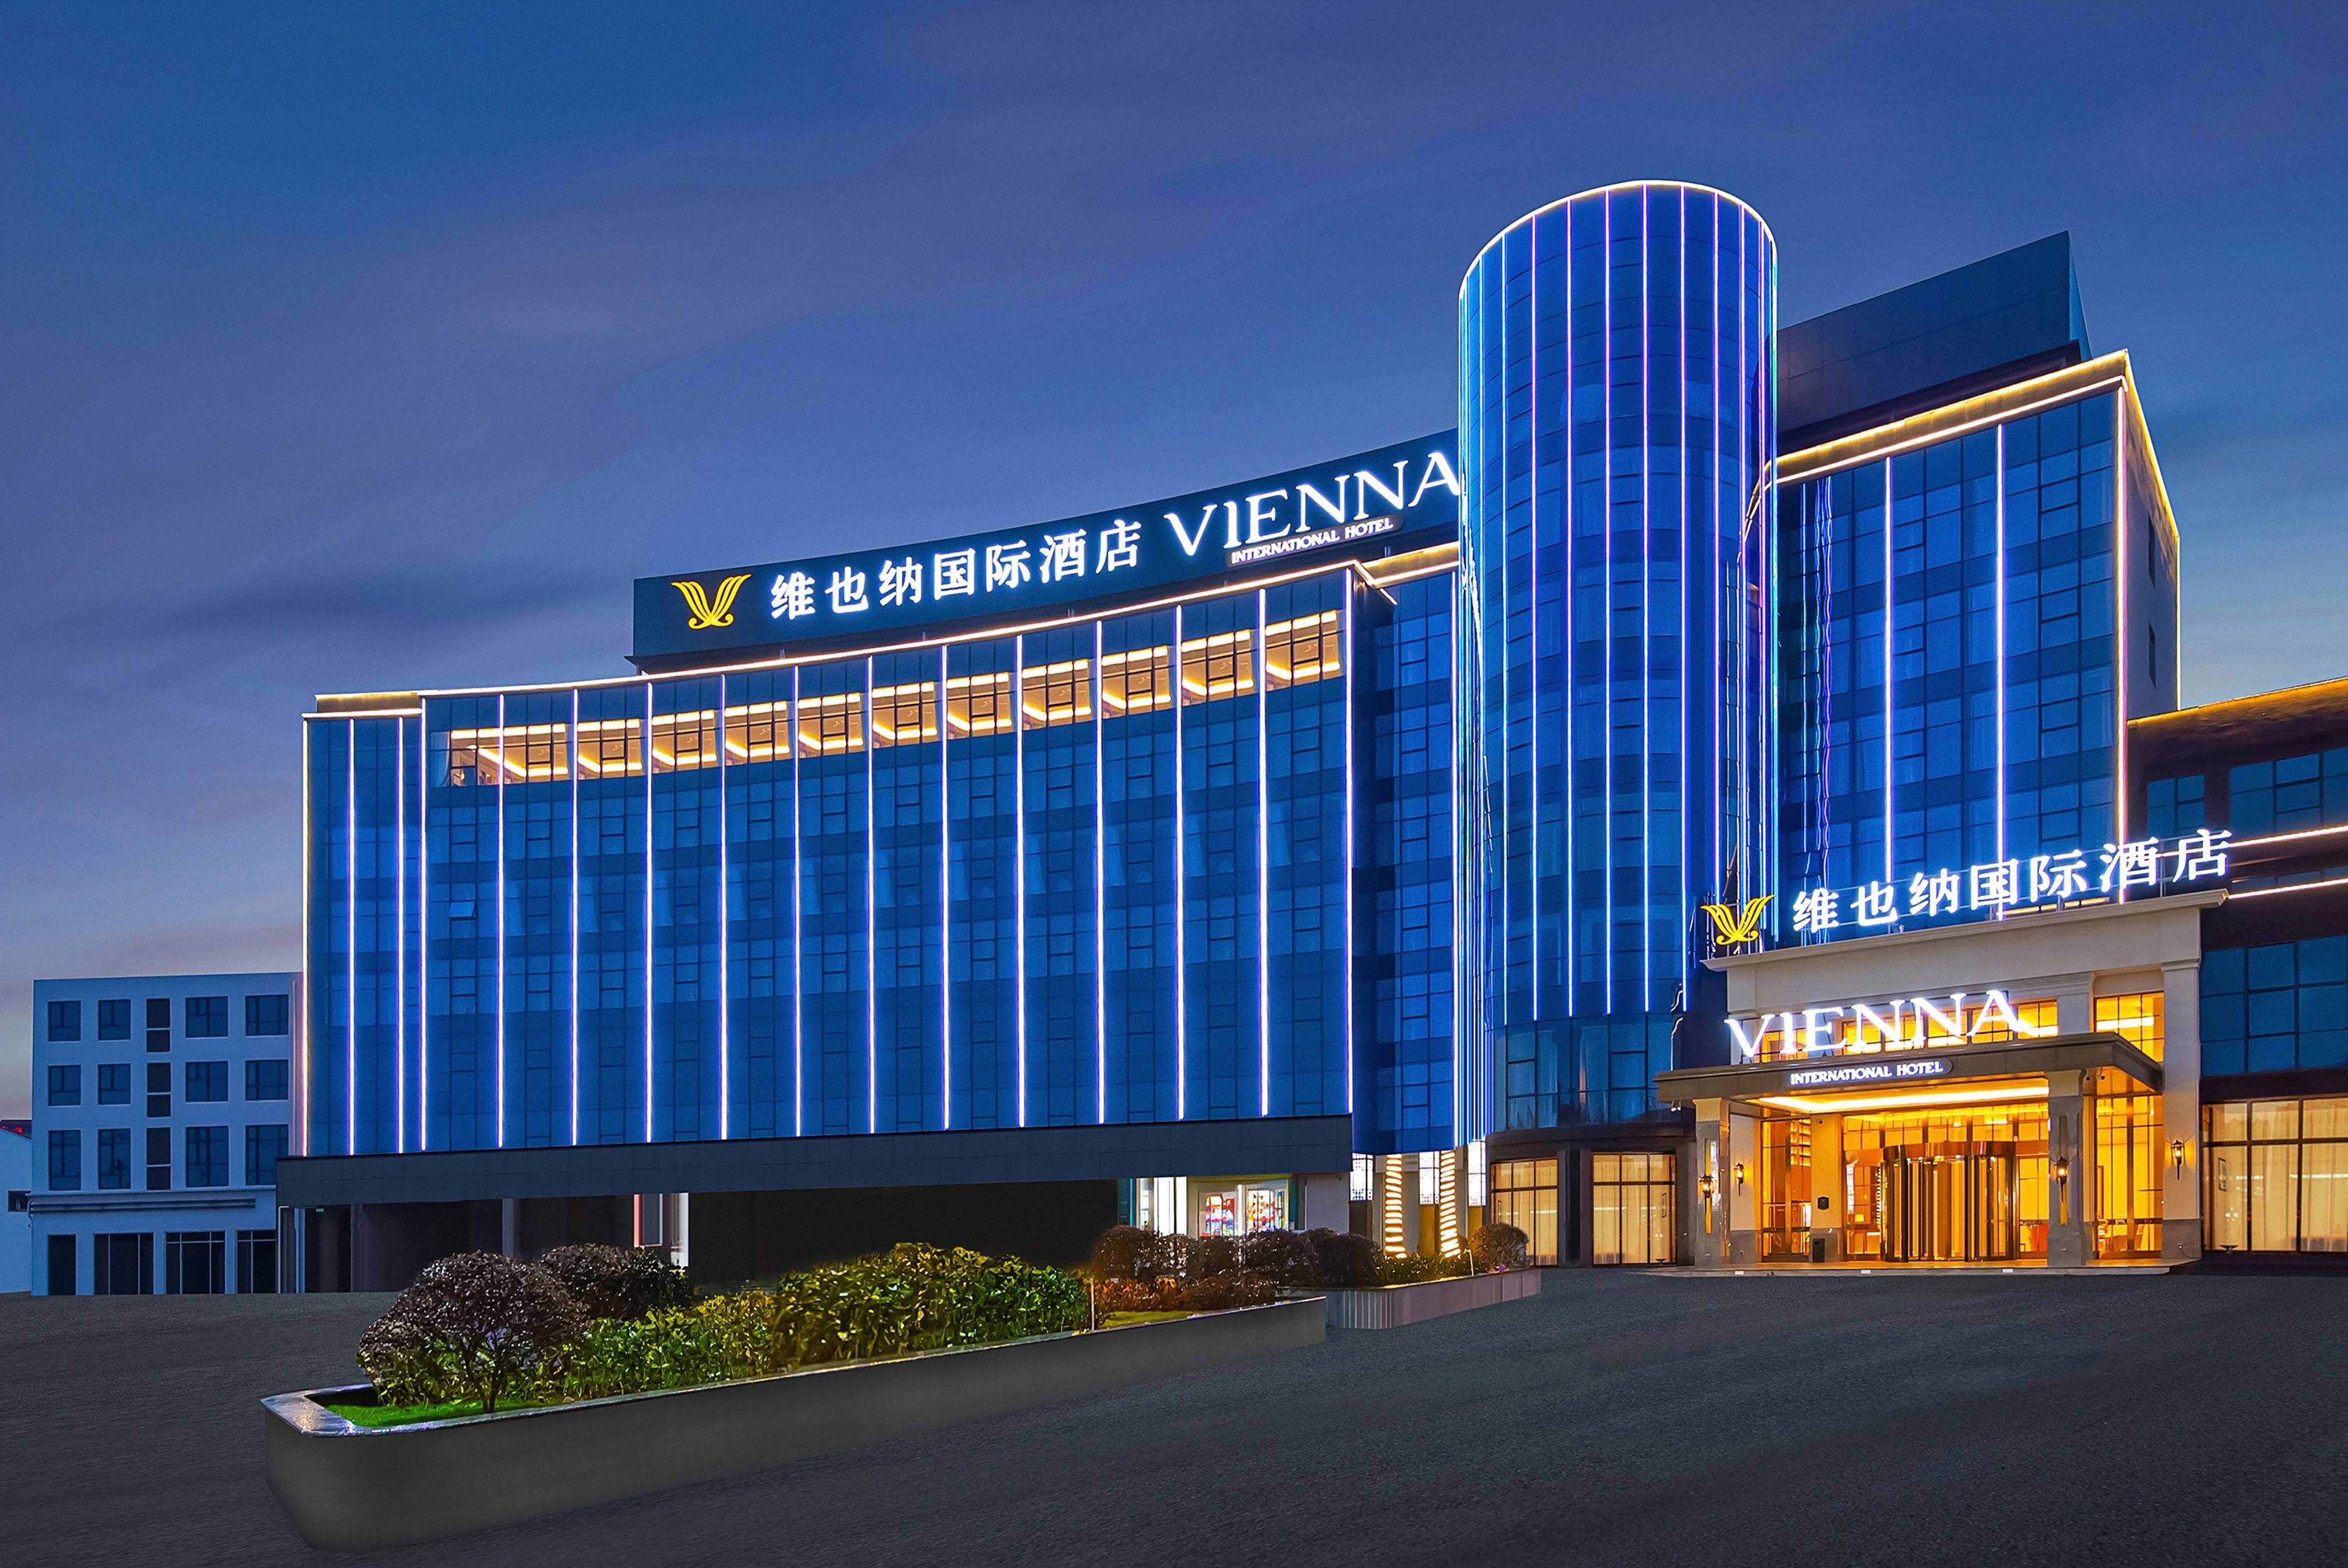 维也纳国际酒店,经典之上的再创新与高质量发展